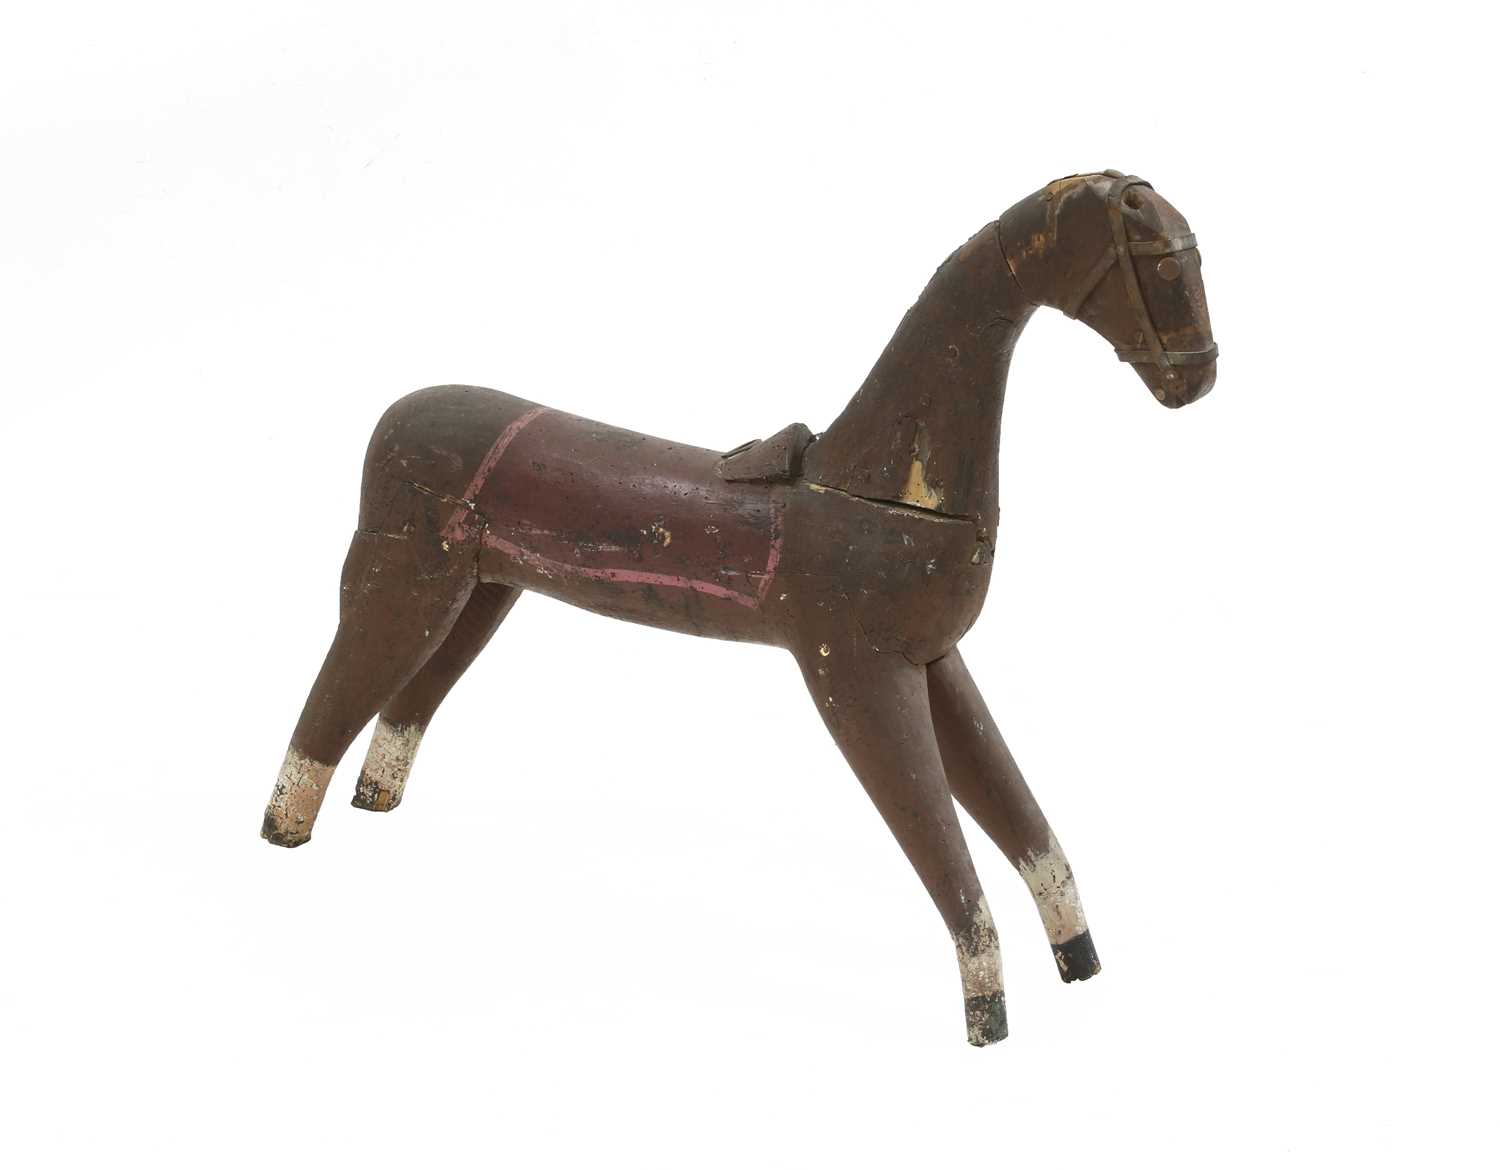 A folk art painted wooden horse,